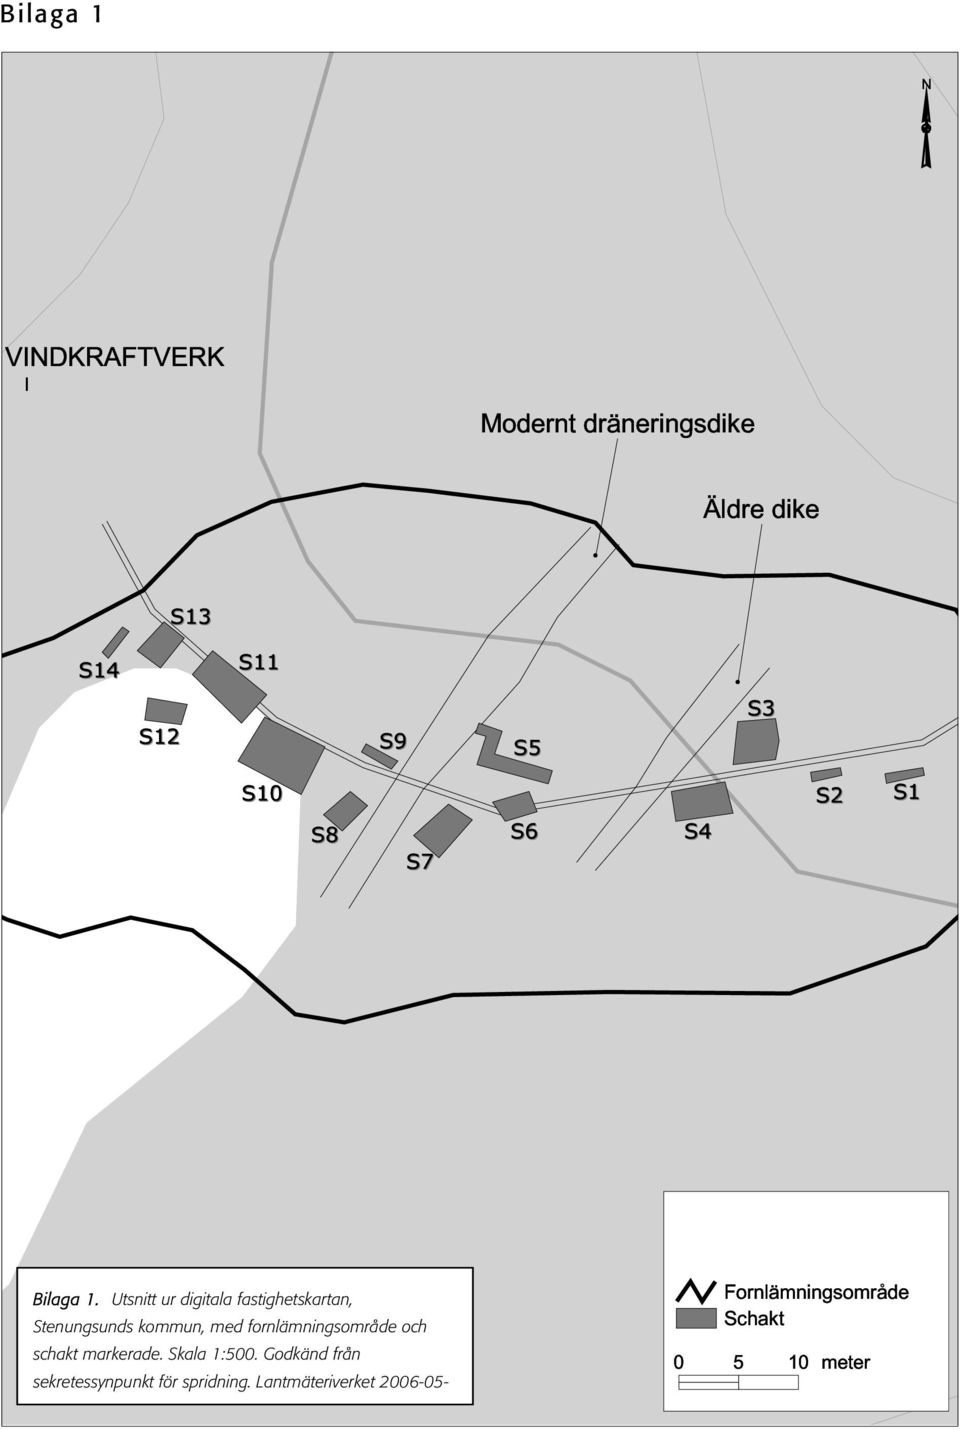 Utsnitt ur digitala fastighetskartan, Stenungsunds kommun, med fornlämningsområde och